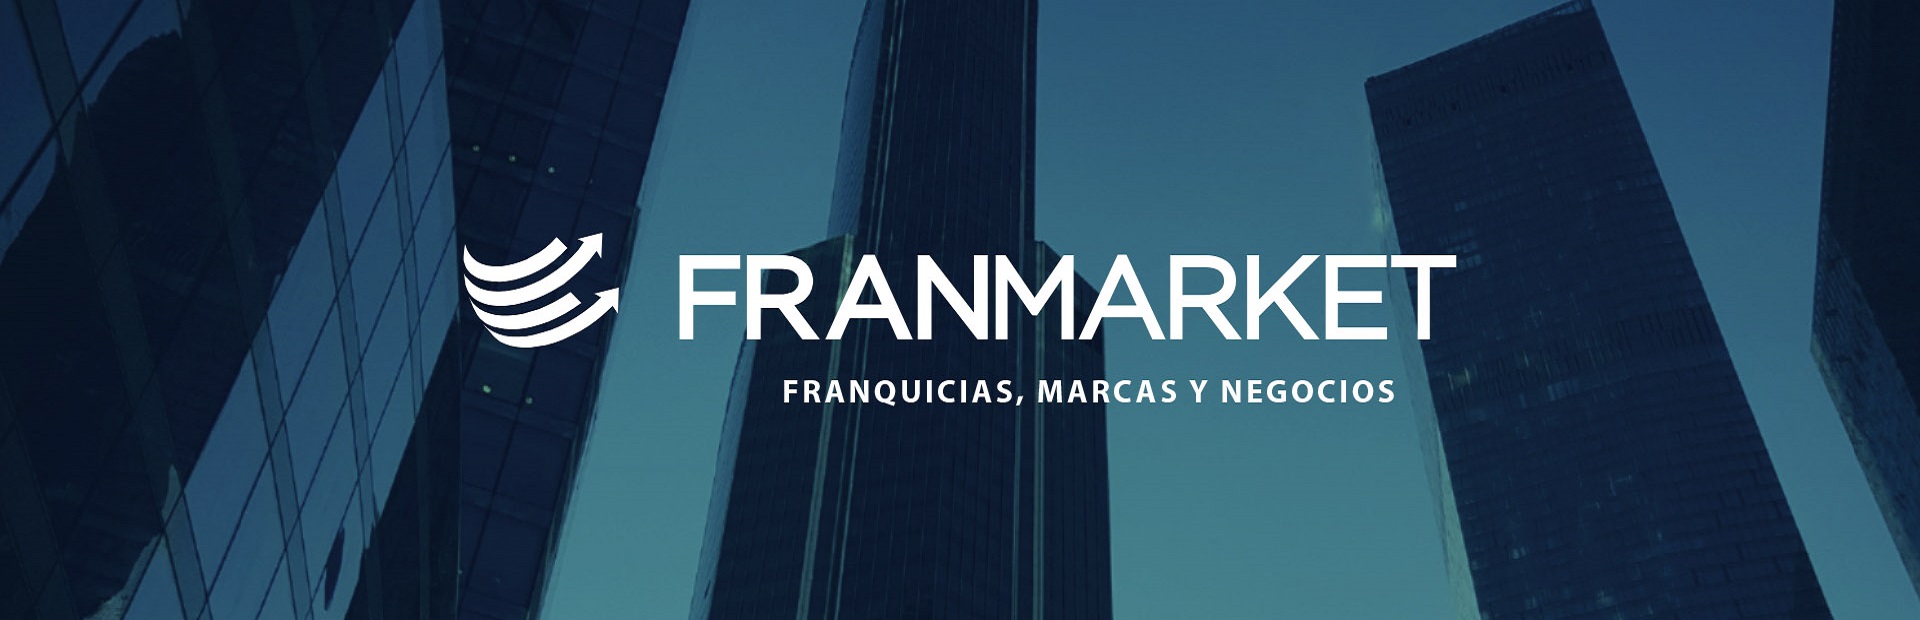 Franmarket